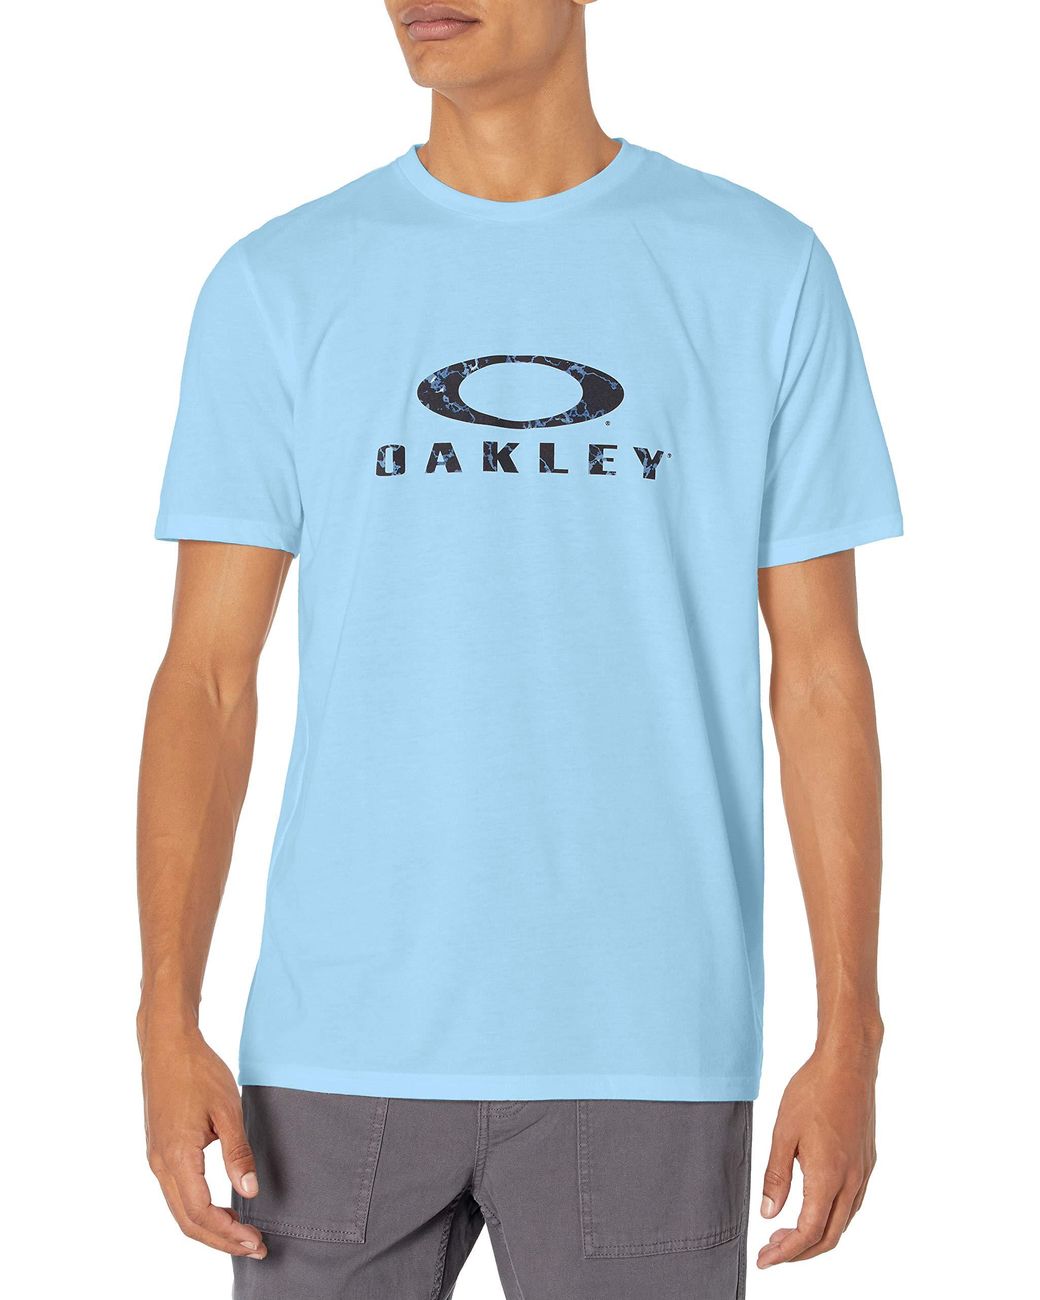 Oakley Synthetic Ellipse Tee in Blue for Men - Lyst